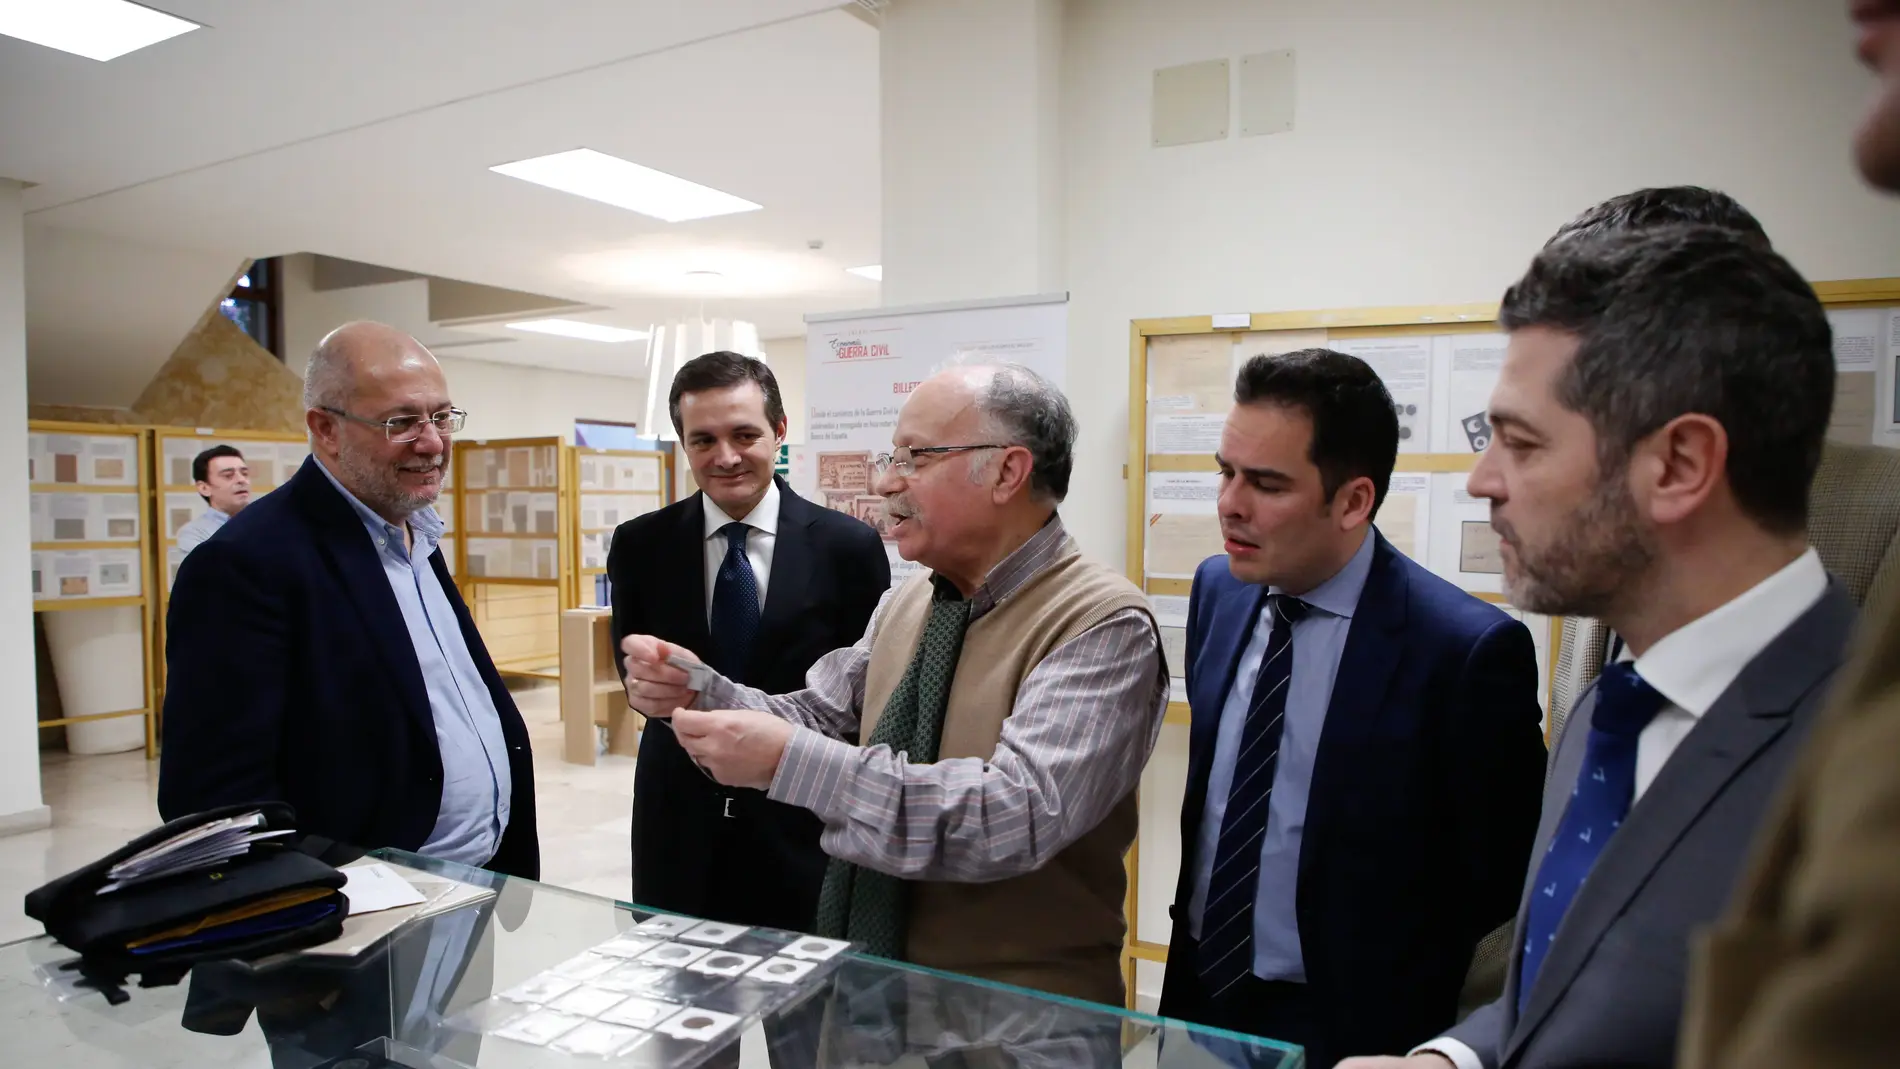 El vicepresidente de la Junta, Francisco Igea, visita la exposición "Economía y Guerra Civil" ubicada en el Archivo Provincial de Salamanca